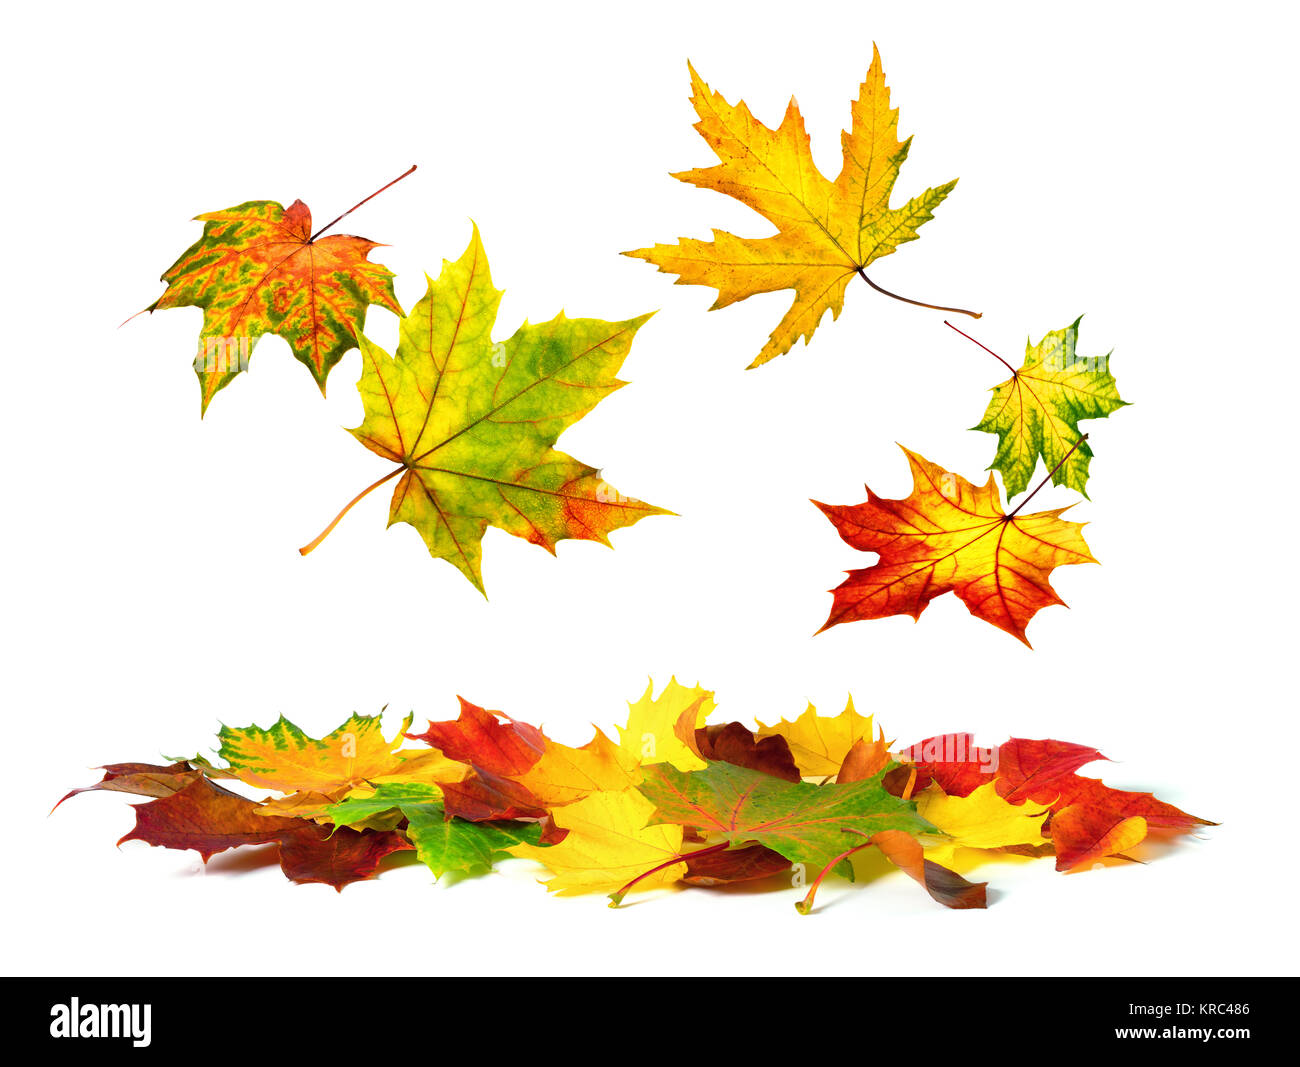 Isolierte Herbstblätter bunten fallen sanft nach unten, mit weißen Textfreiraum Stockfoto